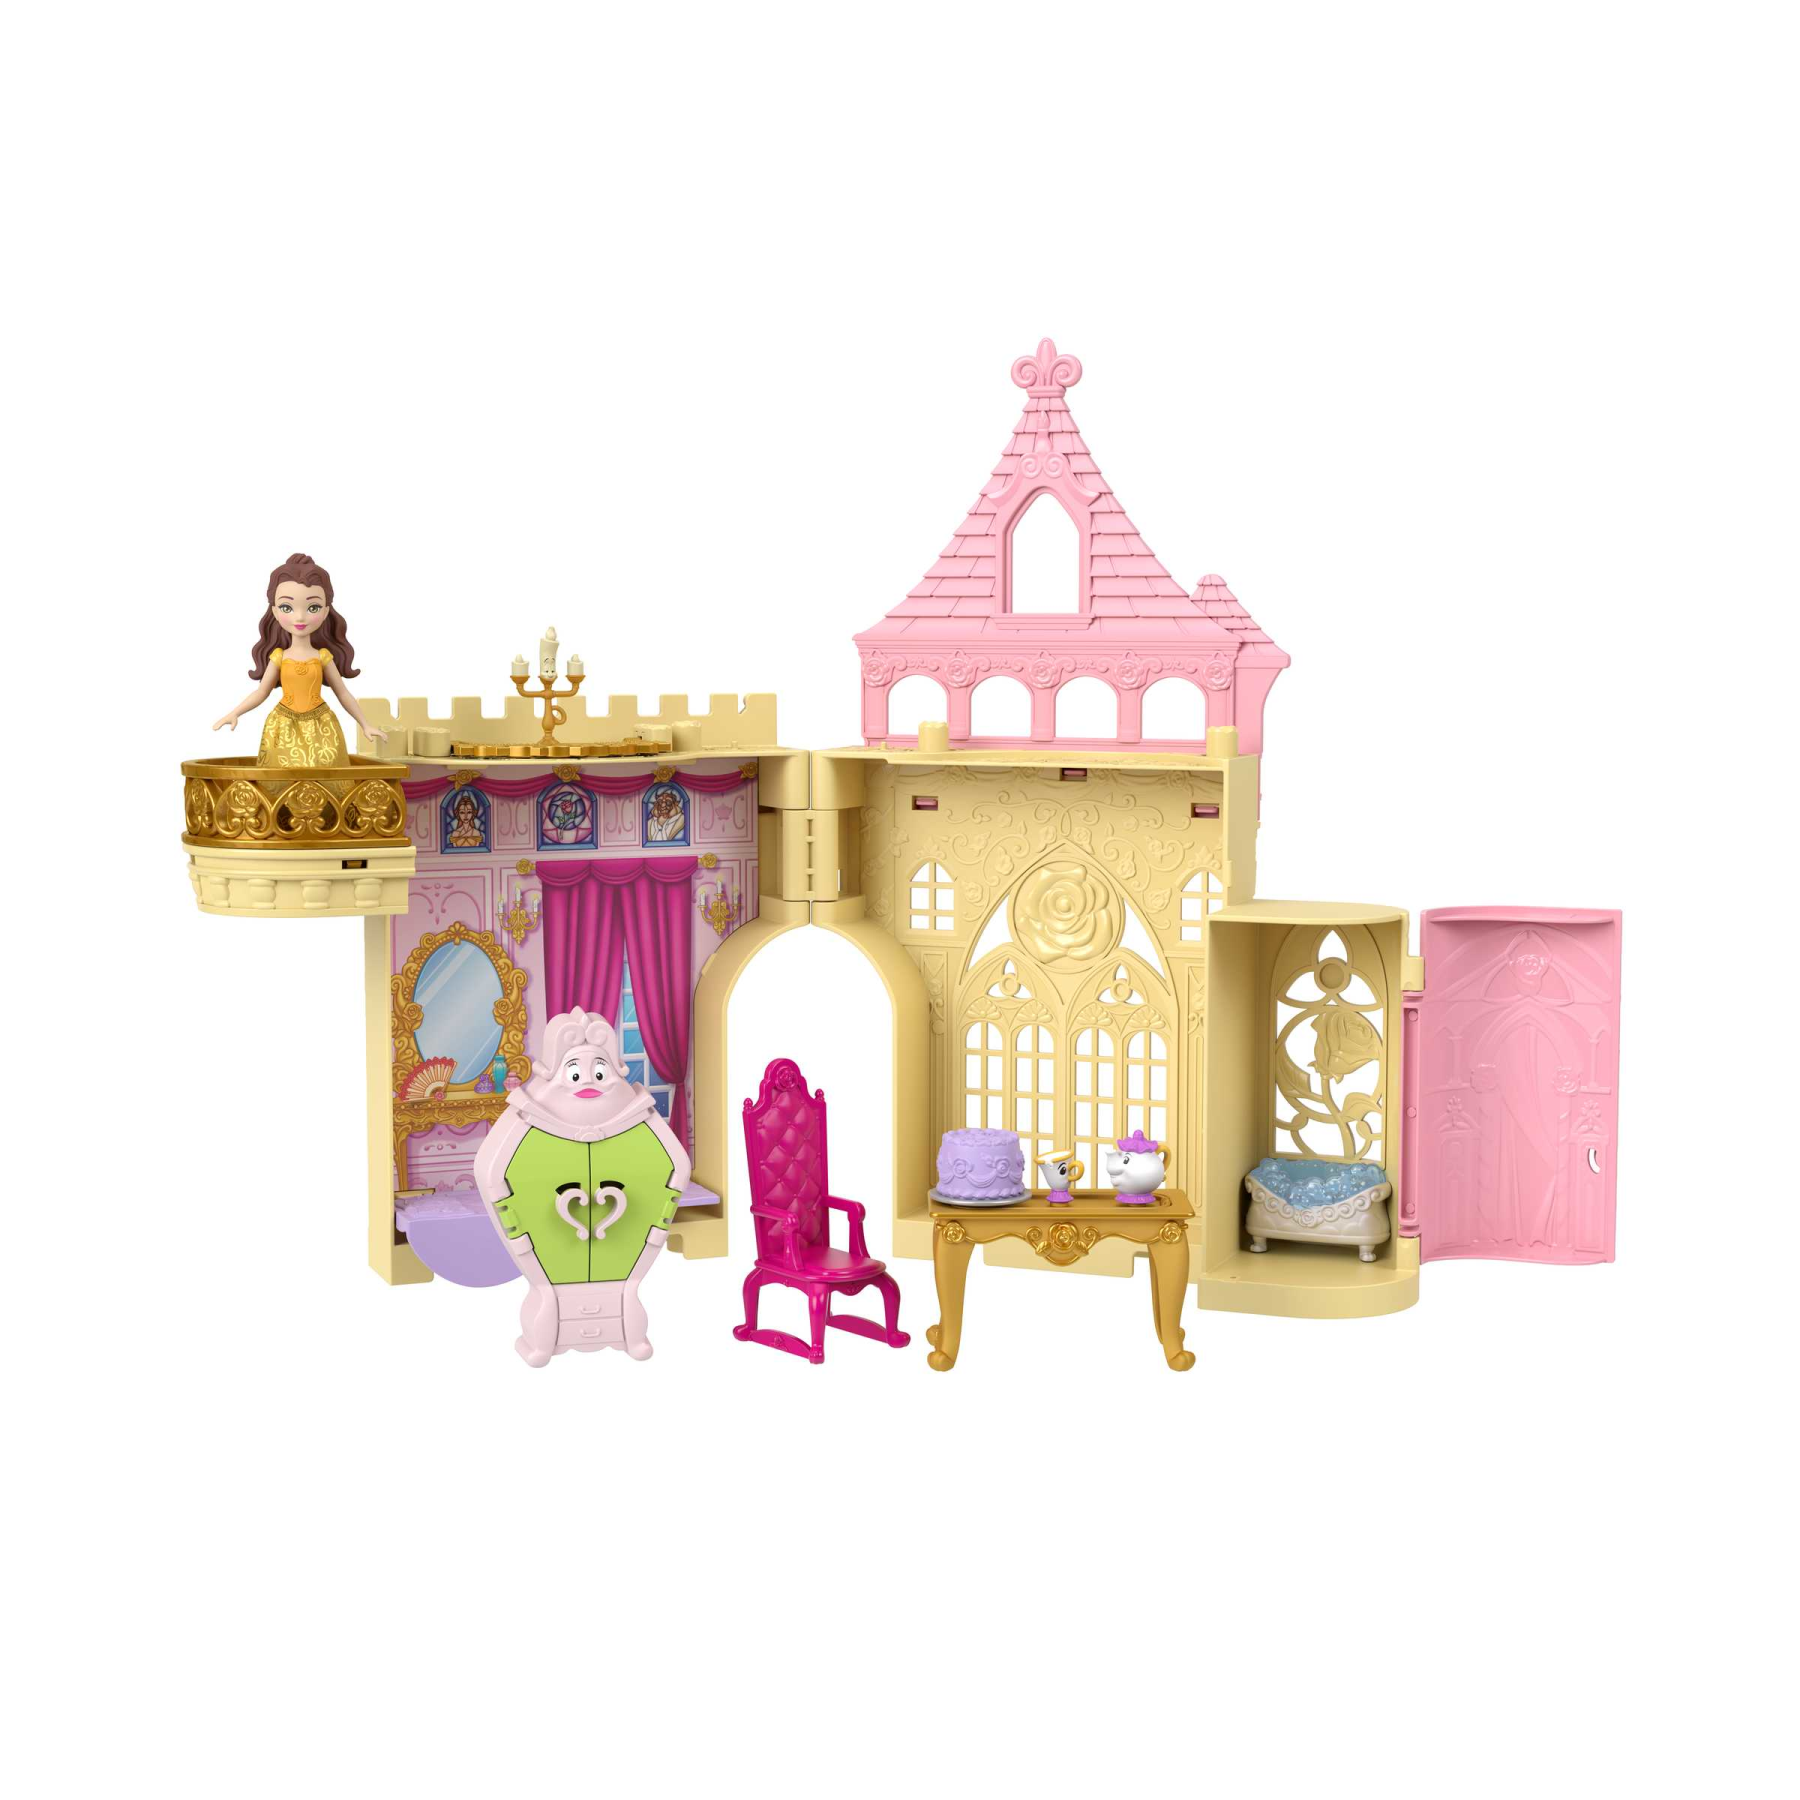 Disney princess - set componibili il castello di belle, playset